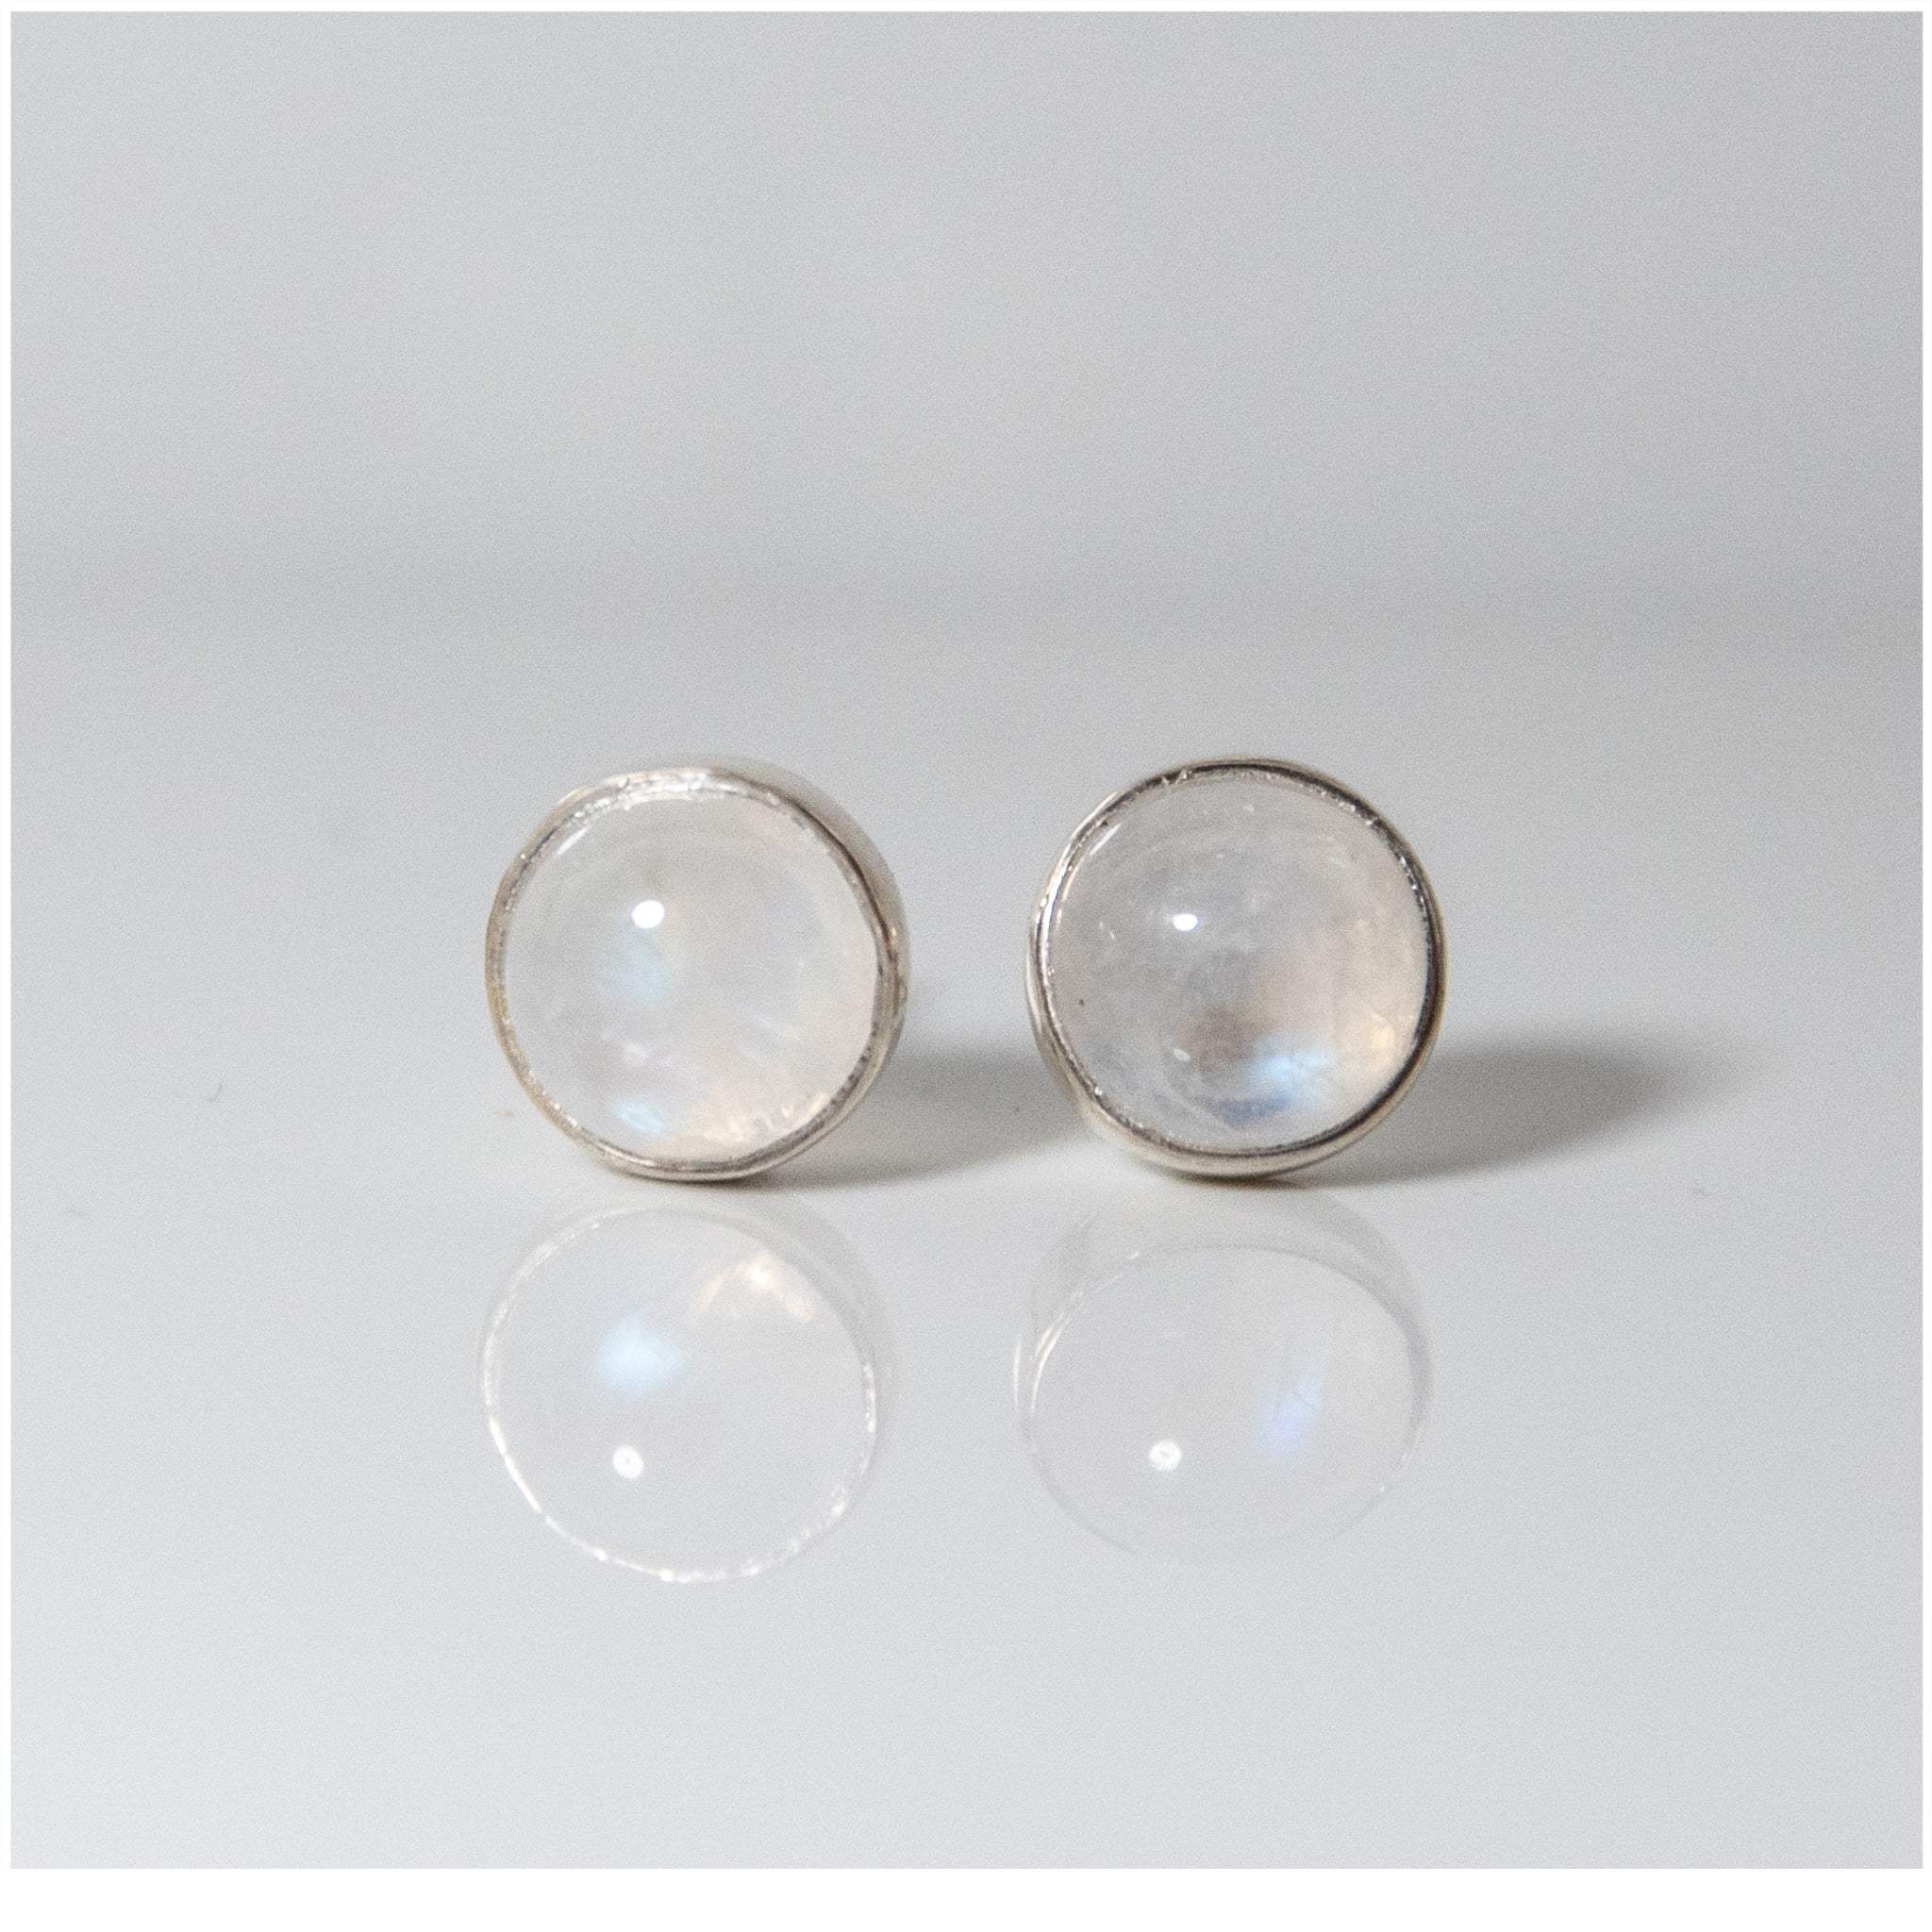 ES051 - Sterling Silver Stud Earrings with Moonstone